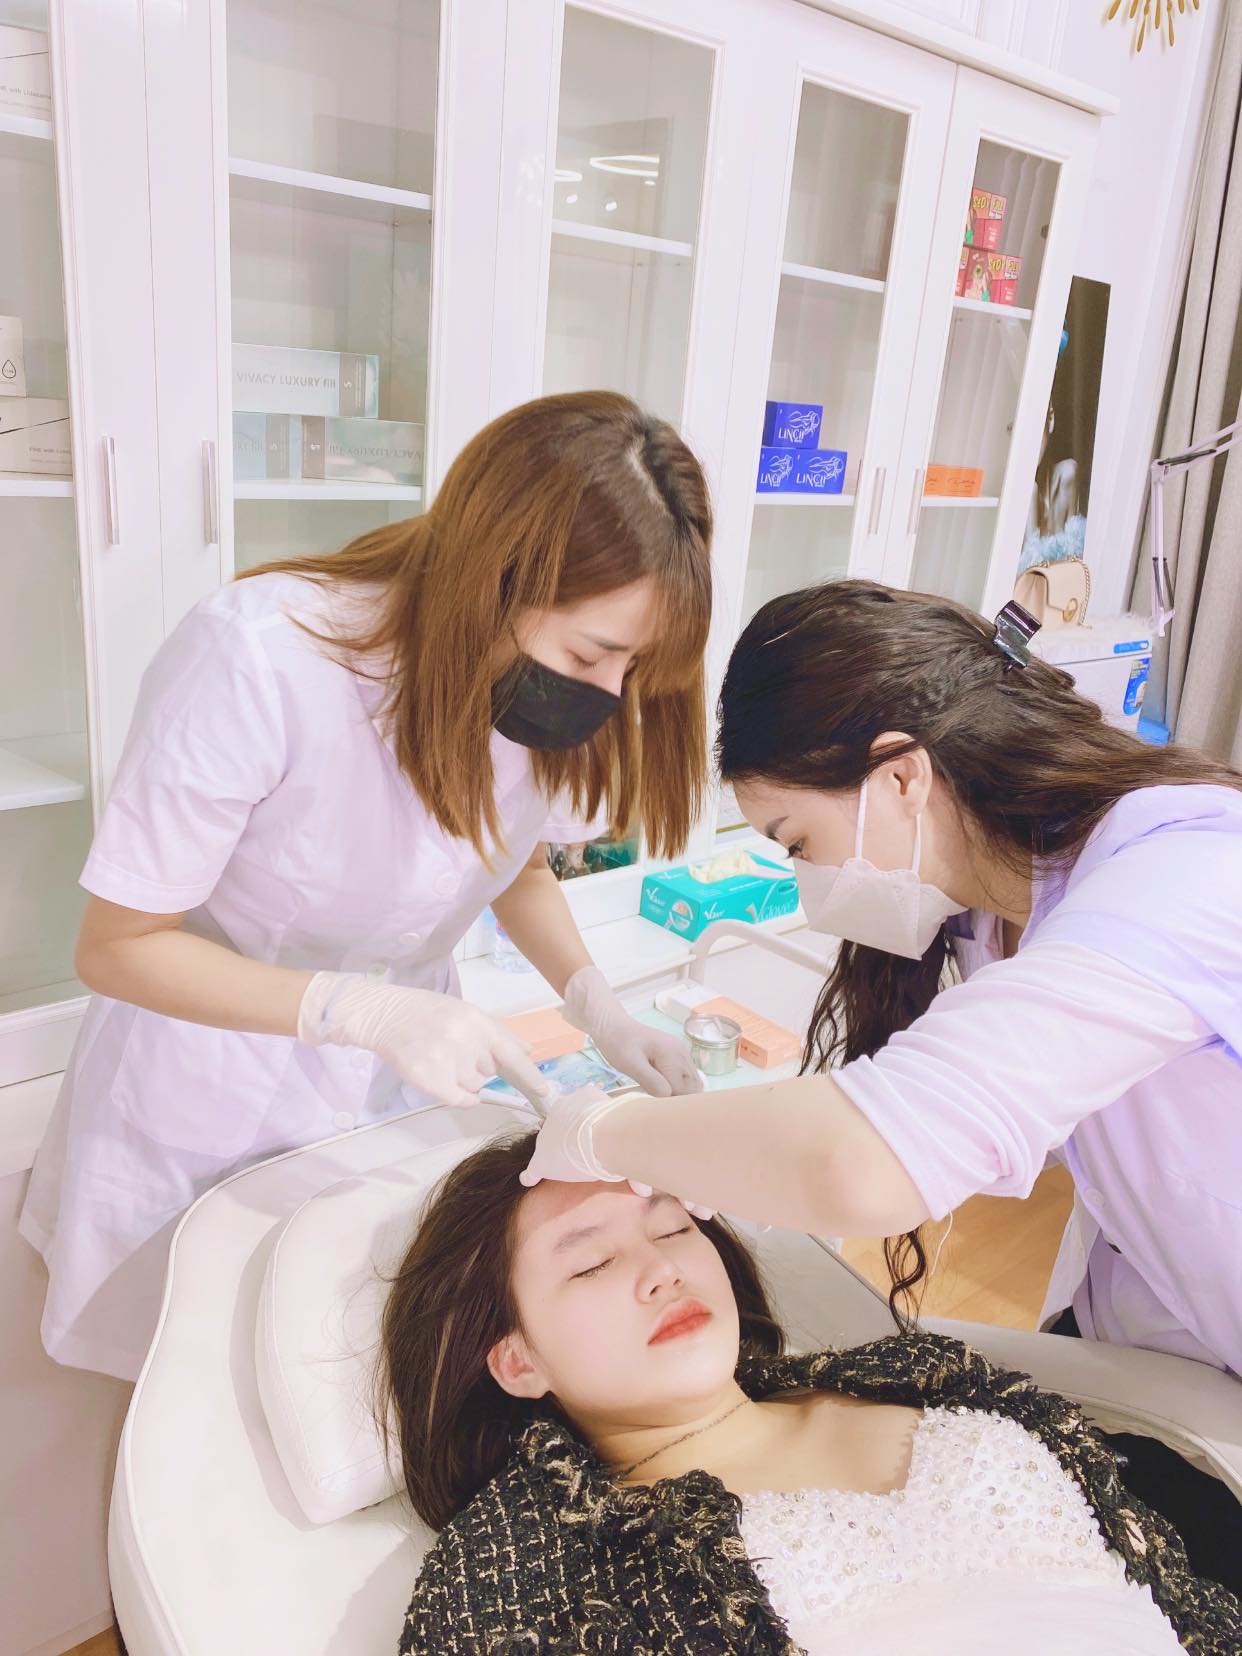 Tại trung tâm nào ở Aura Beauty Clinic tại Seoul, học viên có thể học tiêm filler?
